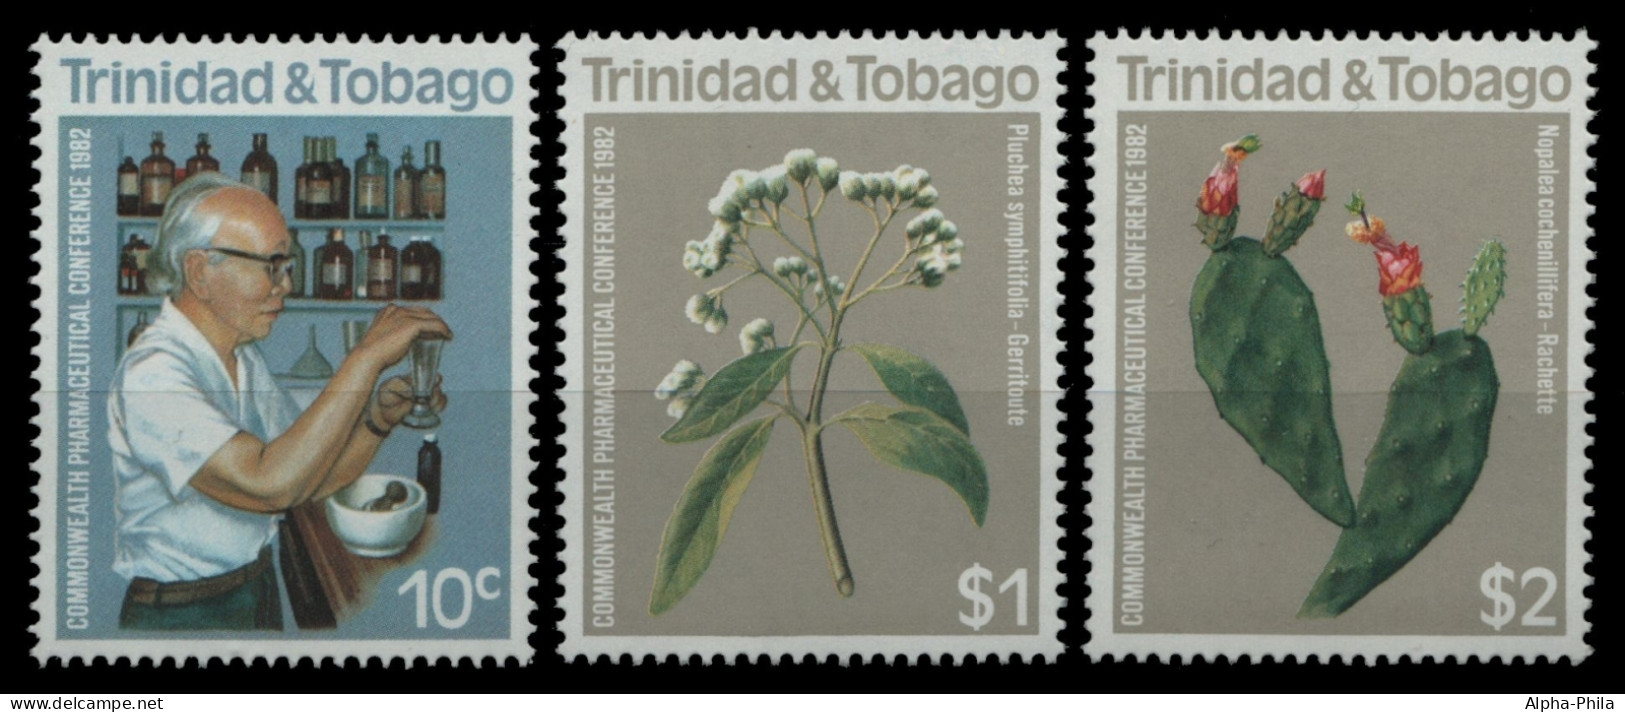 Trinidad & Tobago 1982 - Mi-Nr. 445-447 ** - MNH - Pflanzen / Plants - Trinidad & Tobago (1962-...)